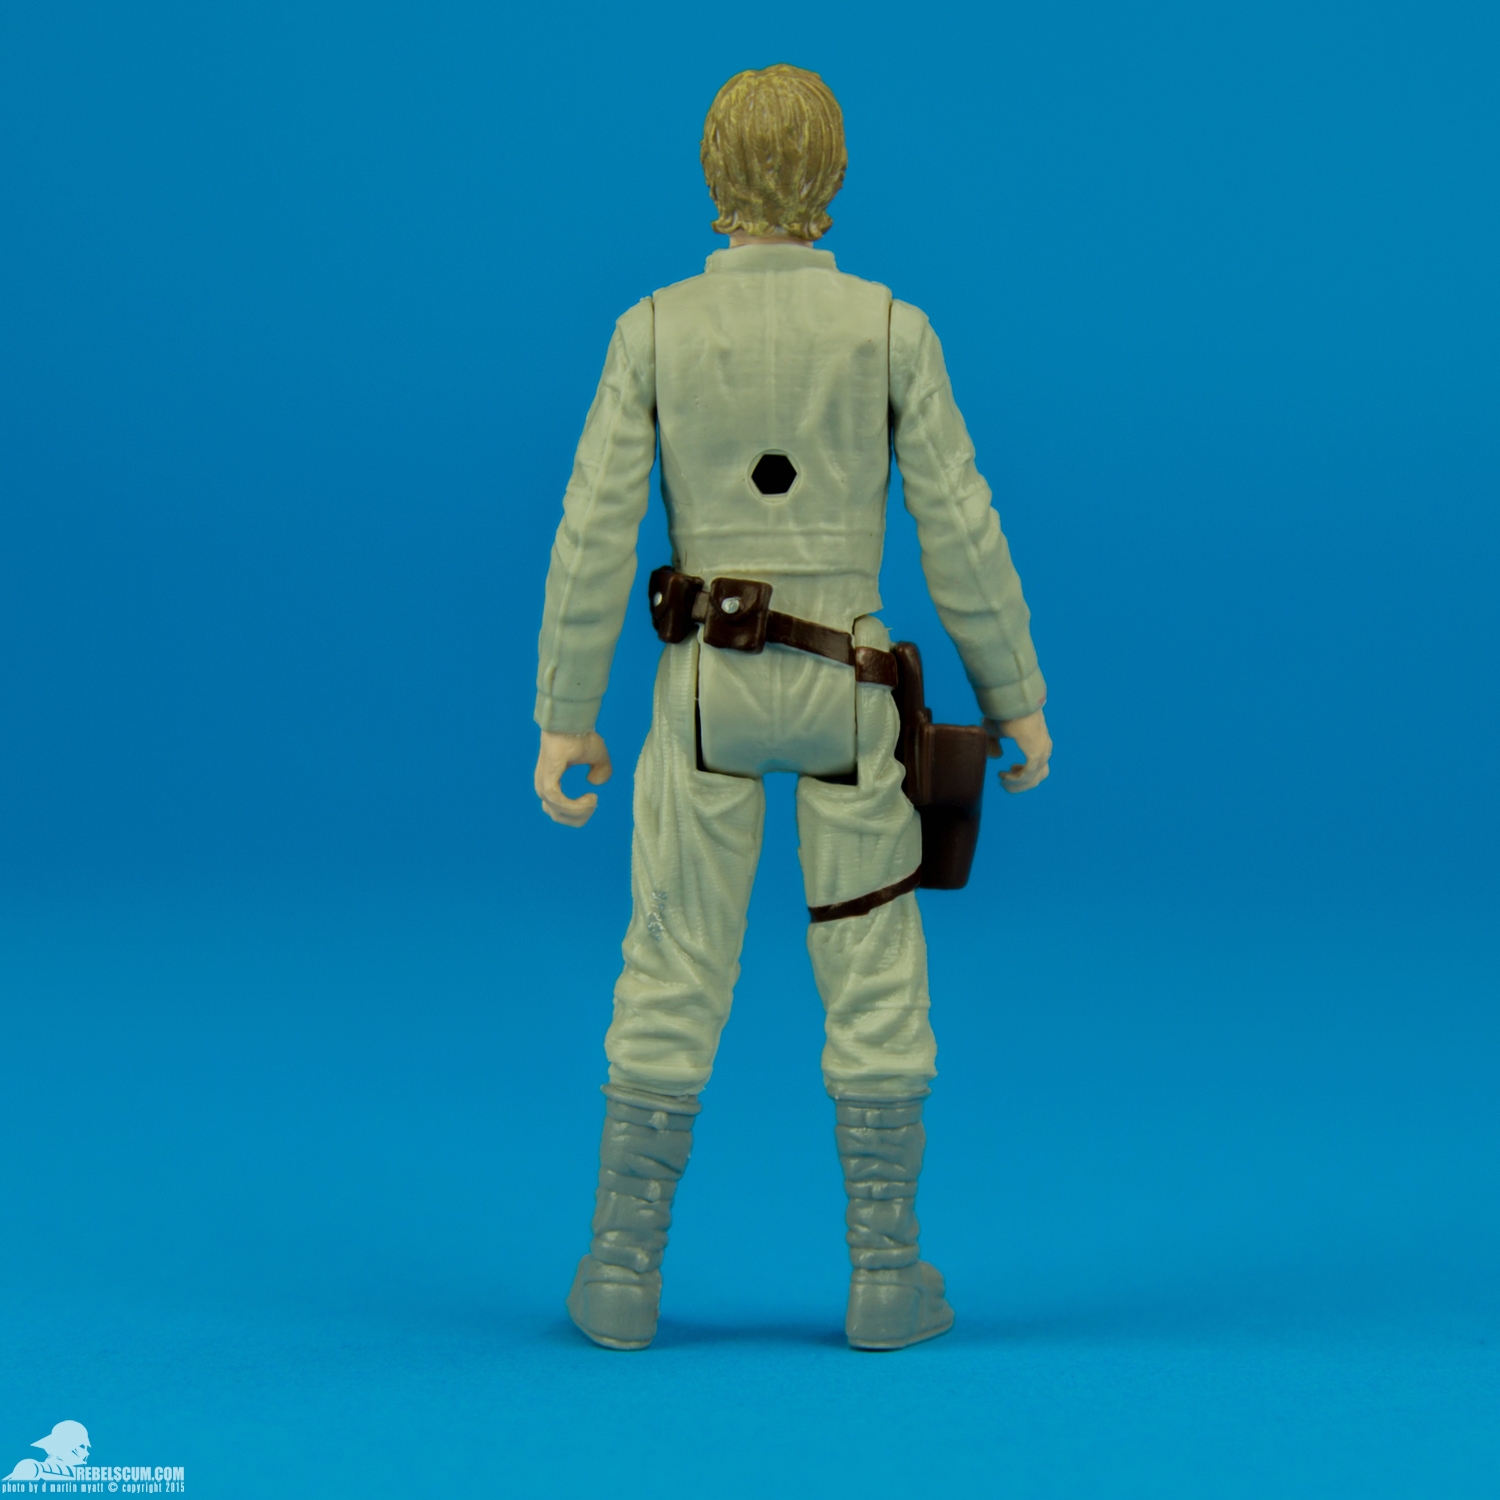 Luke-Skywalker-Star-Wars-The-Force-Awakens-Hasbro-004.jpg